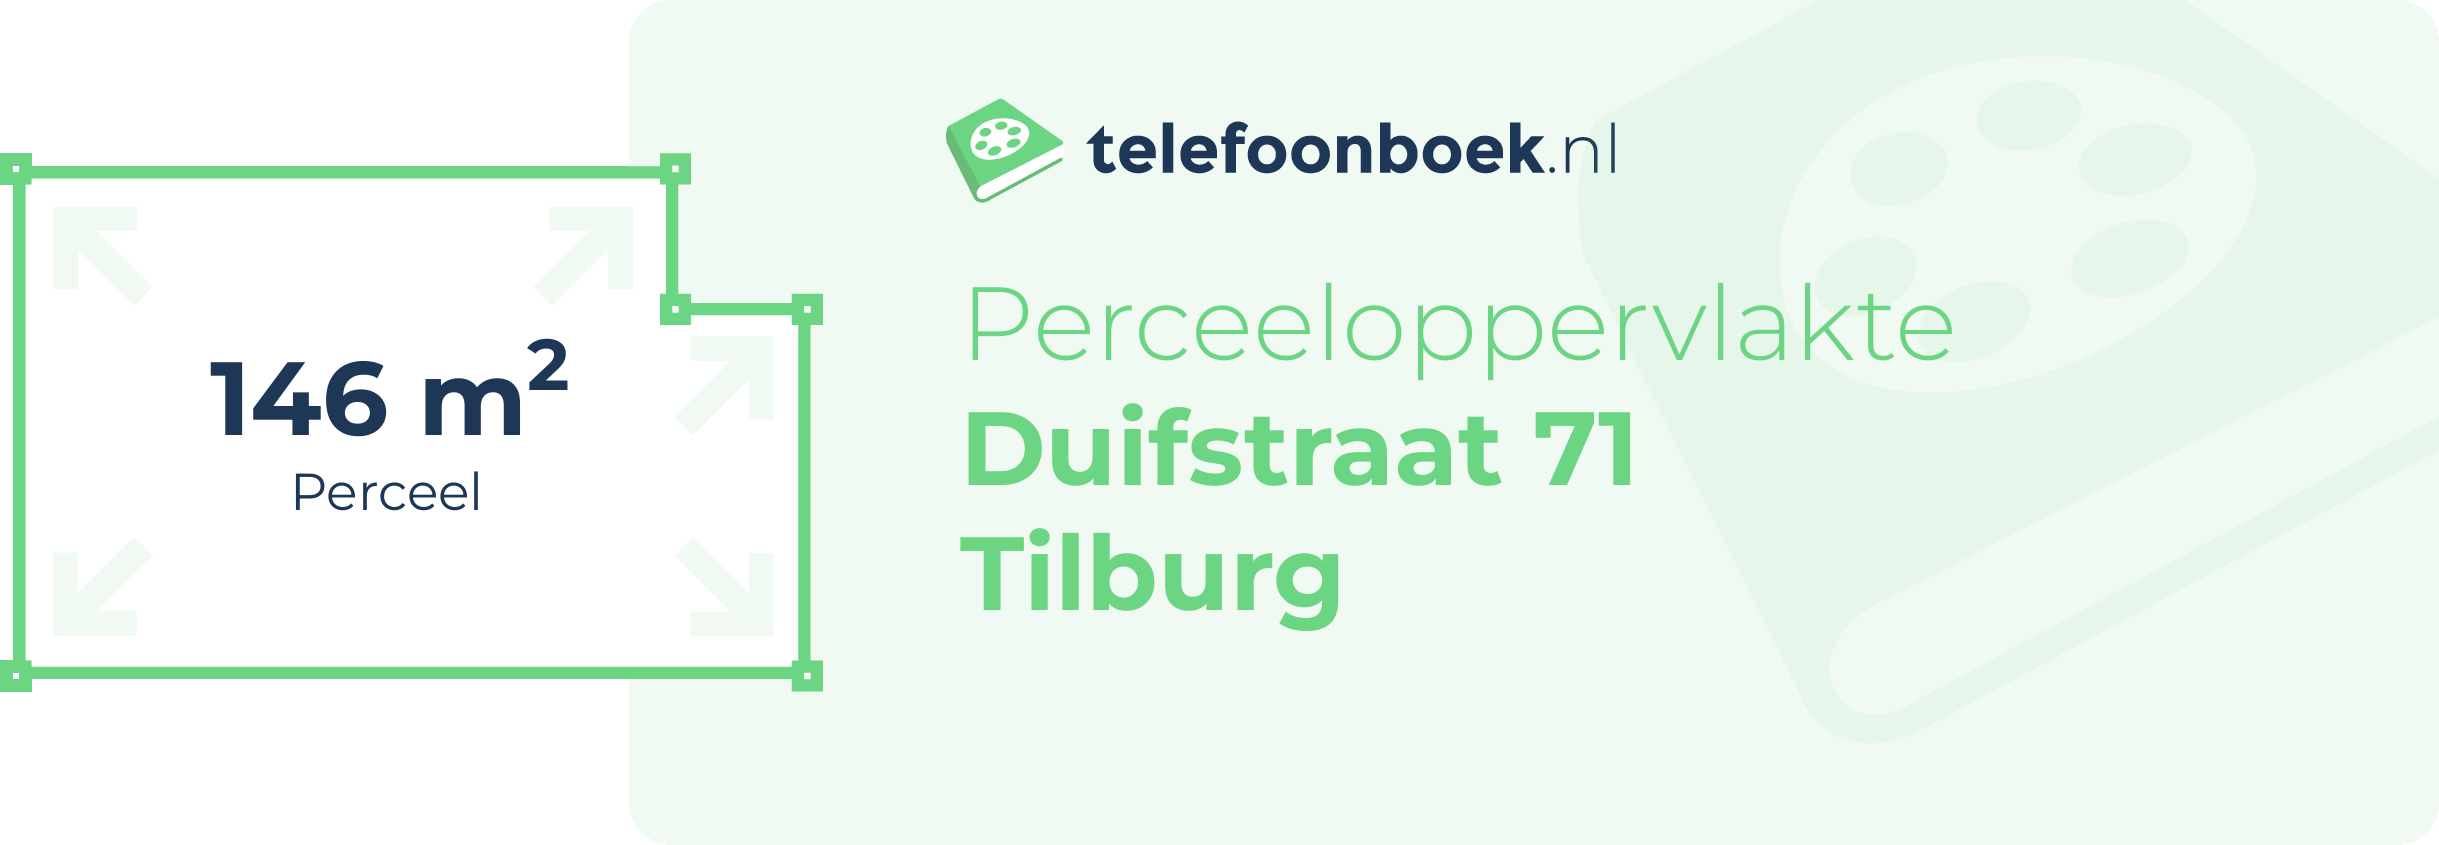 Perceeloppervlakte Duifstraat 71 Tilburg